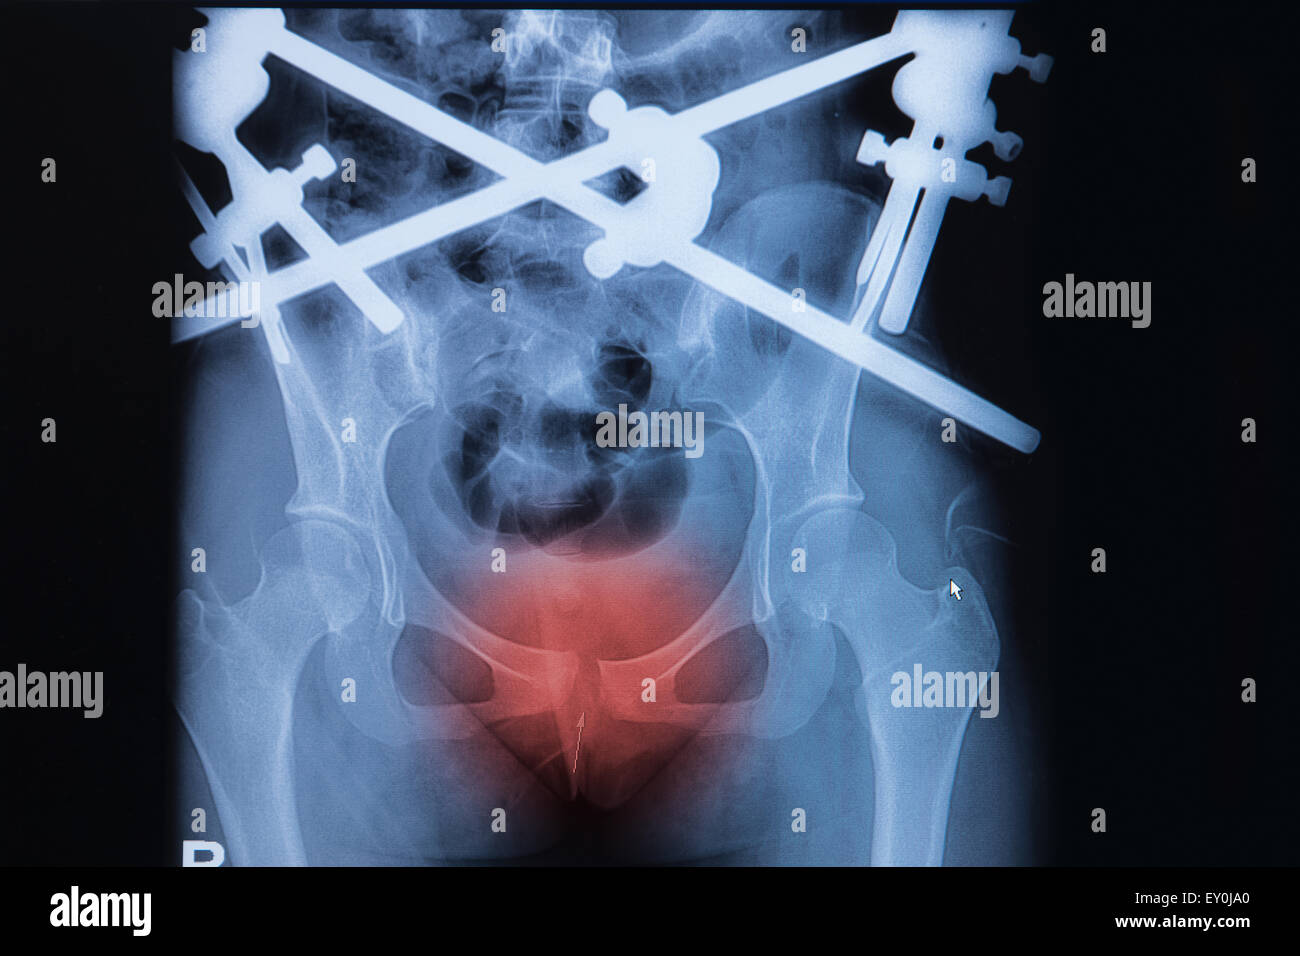 Immagine a raggi x di frattura pubica con fissazione esterna Foto Stock